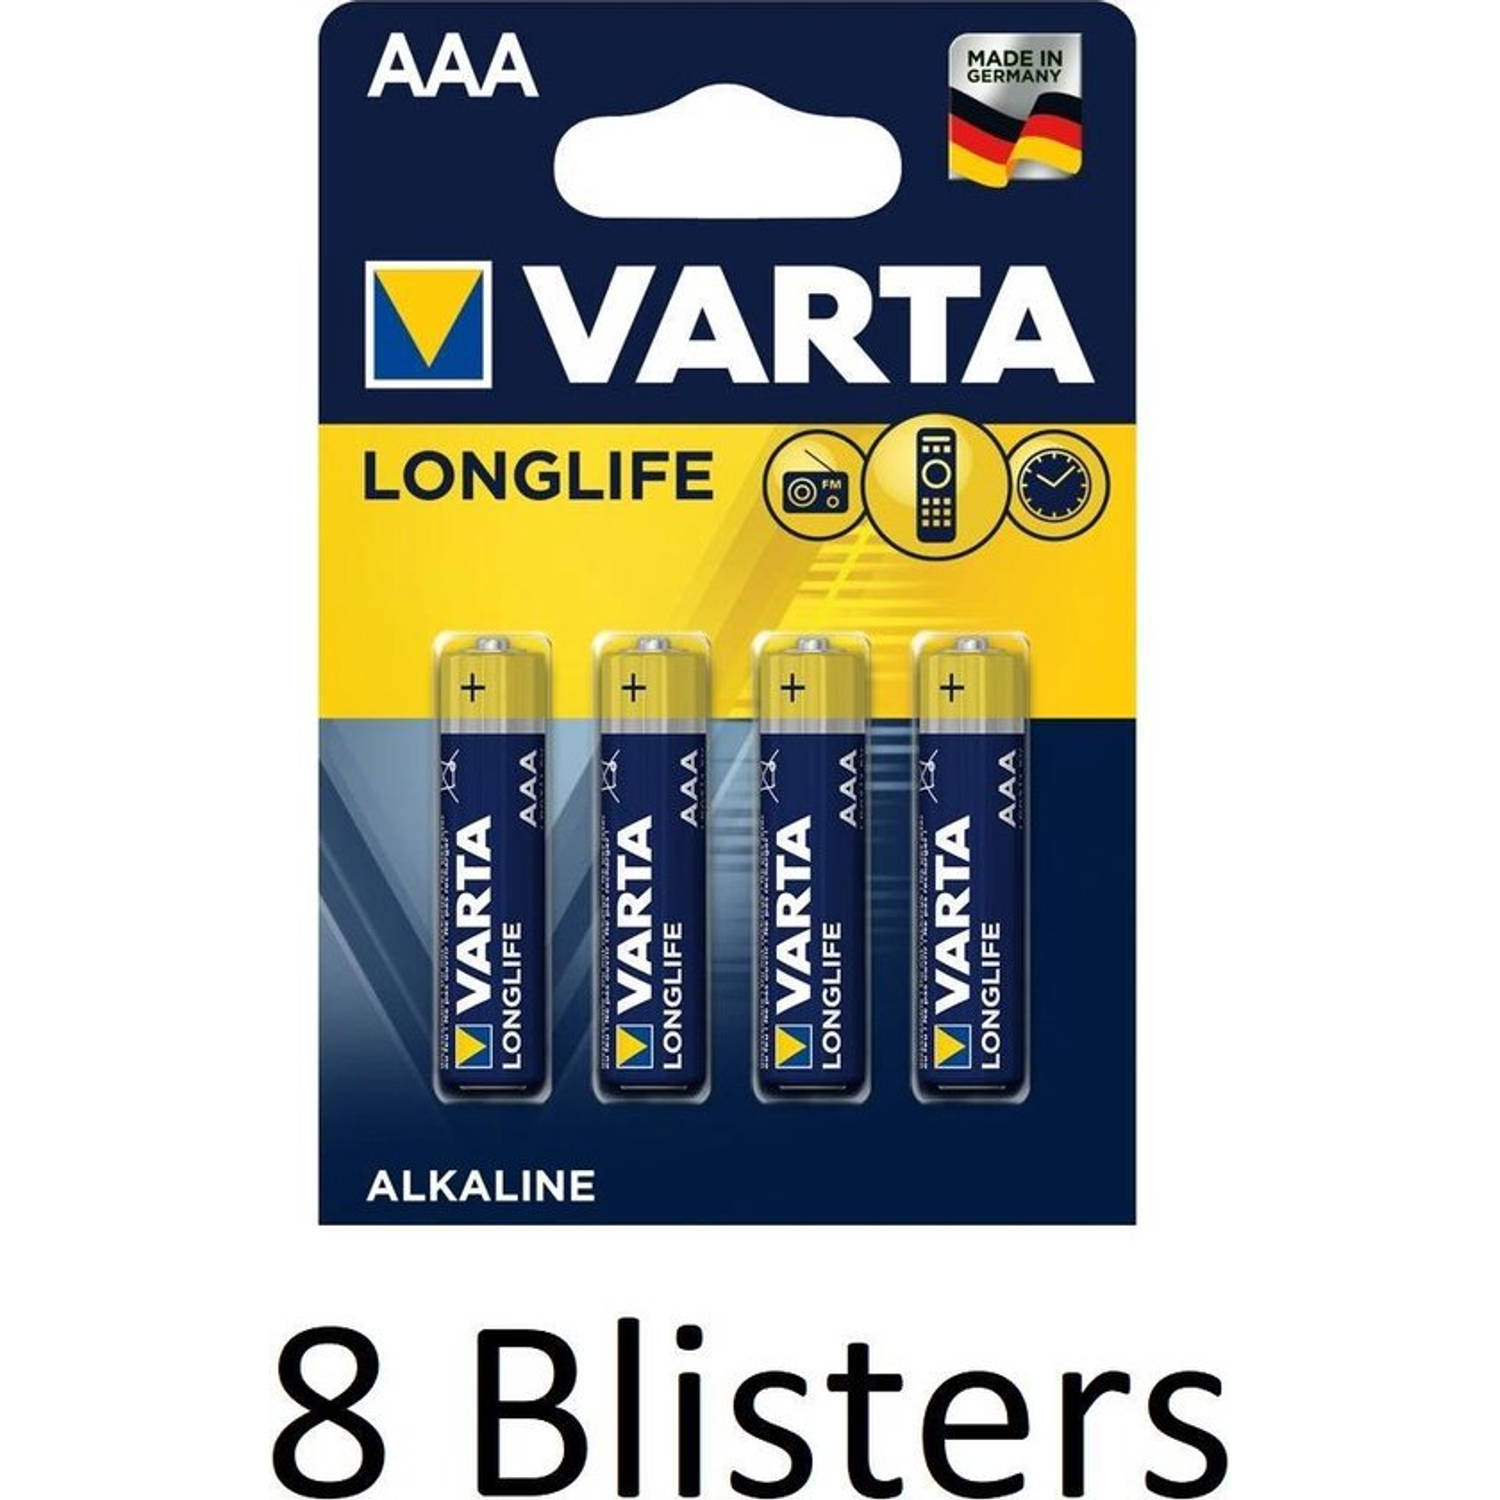 32 Stuks (8 Blisters a 4 st) Varta Longlife AAA Alkaline Batterij